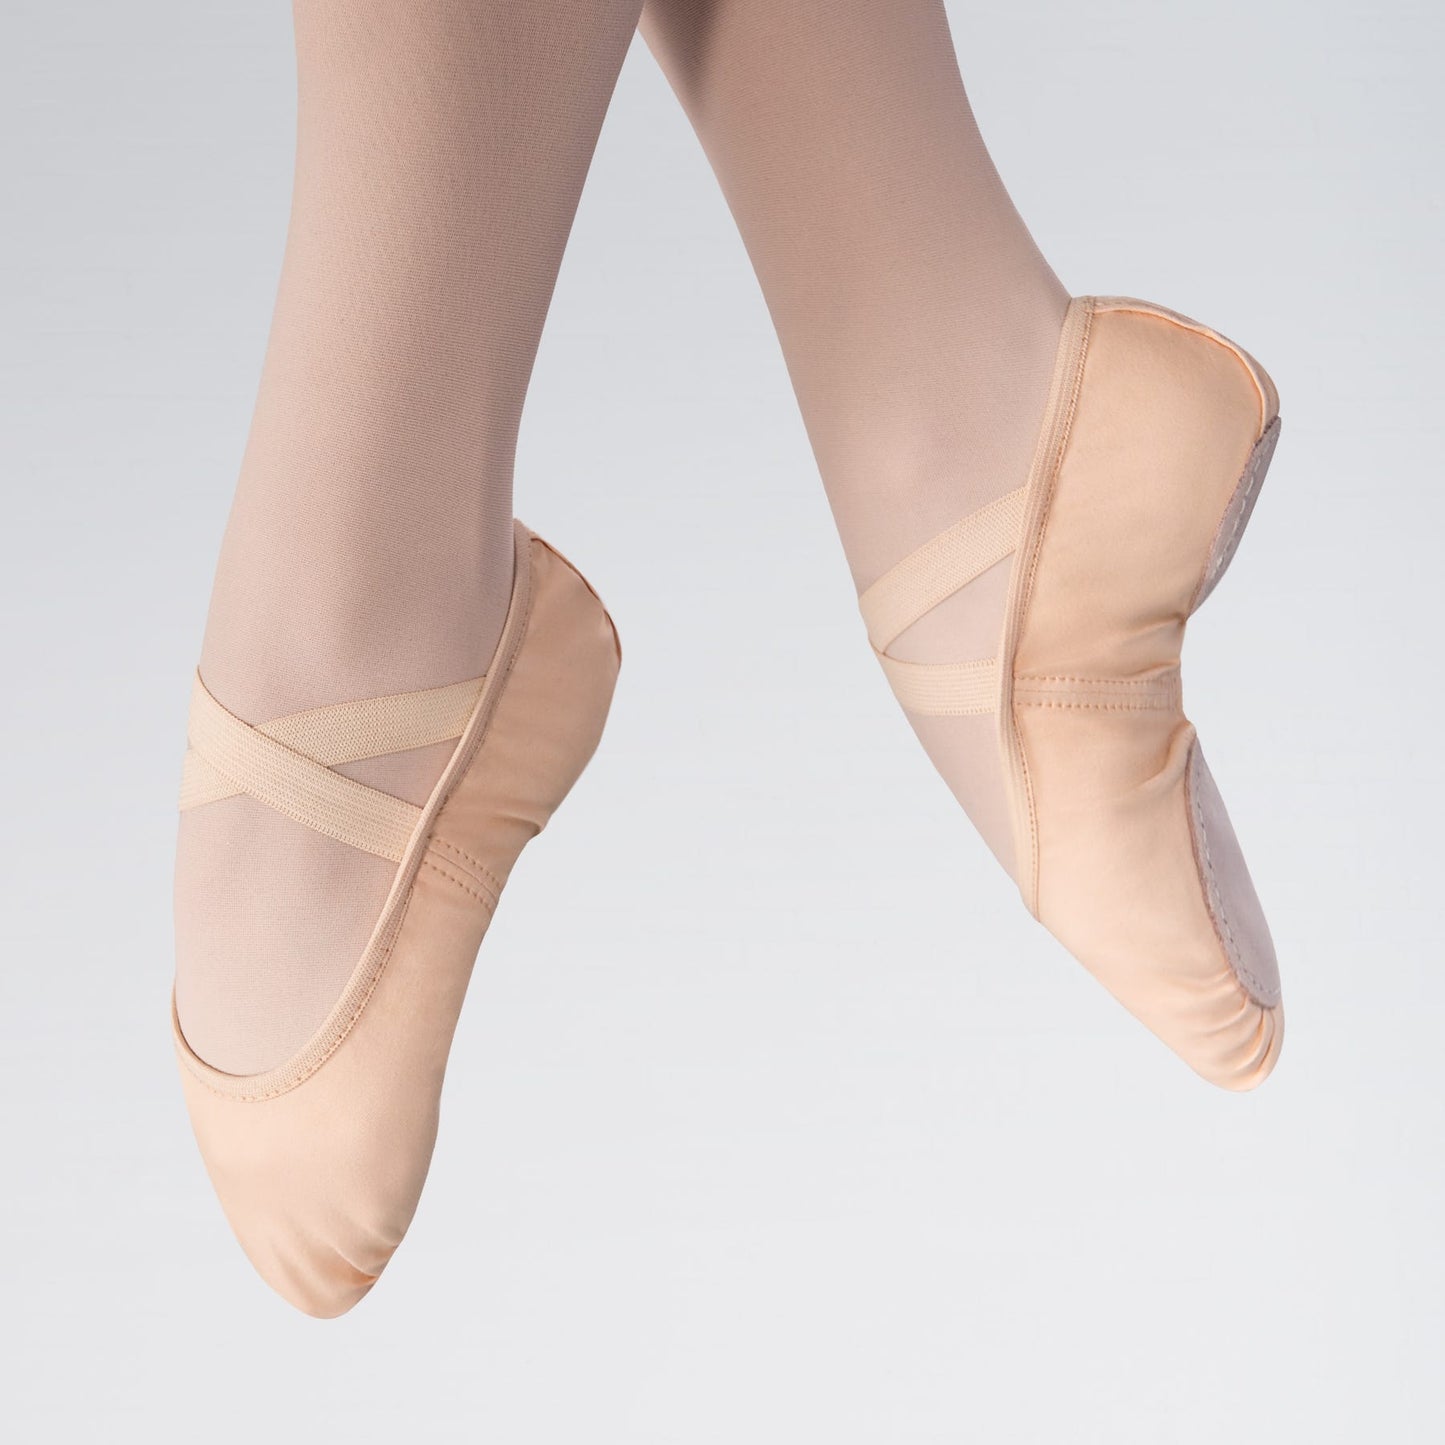 1st Position Split Sole Canvas 2 Way Stretch Ballet Shoe